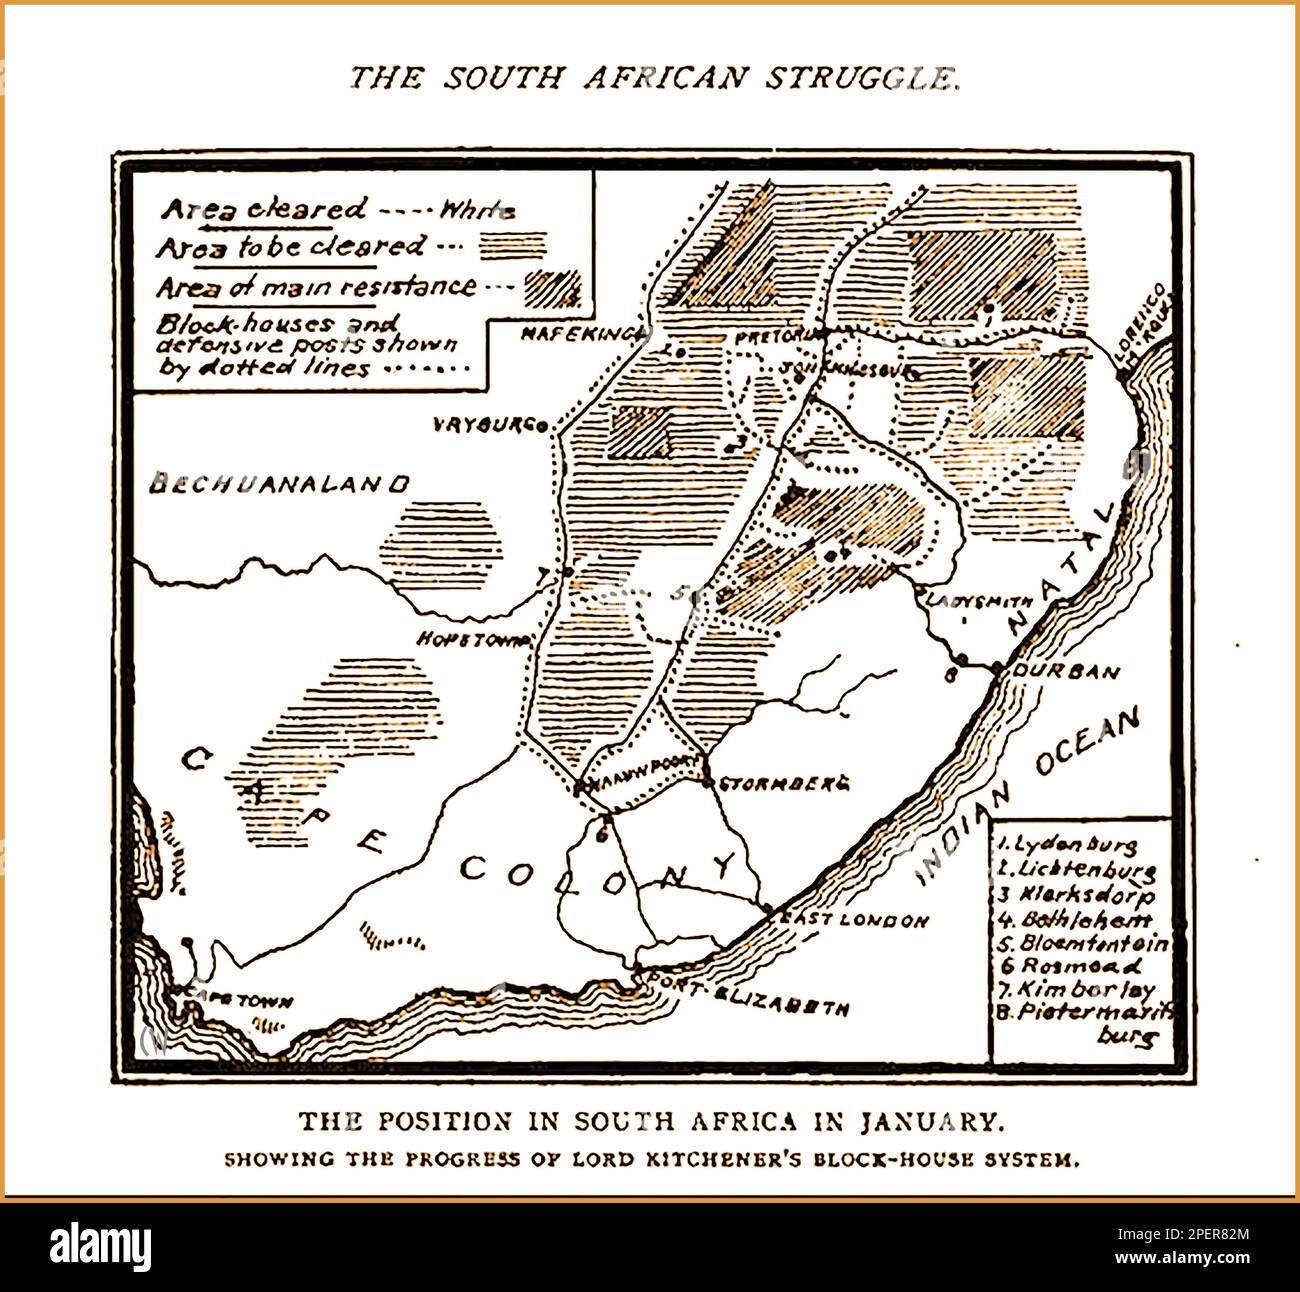 Una mappa stampata del 1892 che mostra lo stato del Sudafrica durante il periodo delle Guerre Boere -- een gedrukte kaart uit 1892 met de staat Zuid-Afrika tijdens de periode van de Boerenoorlogen - Foto Stock